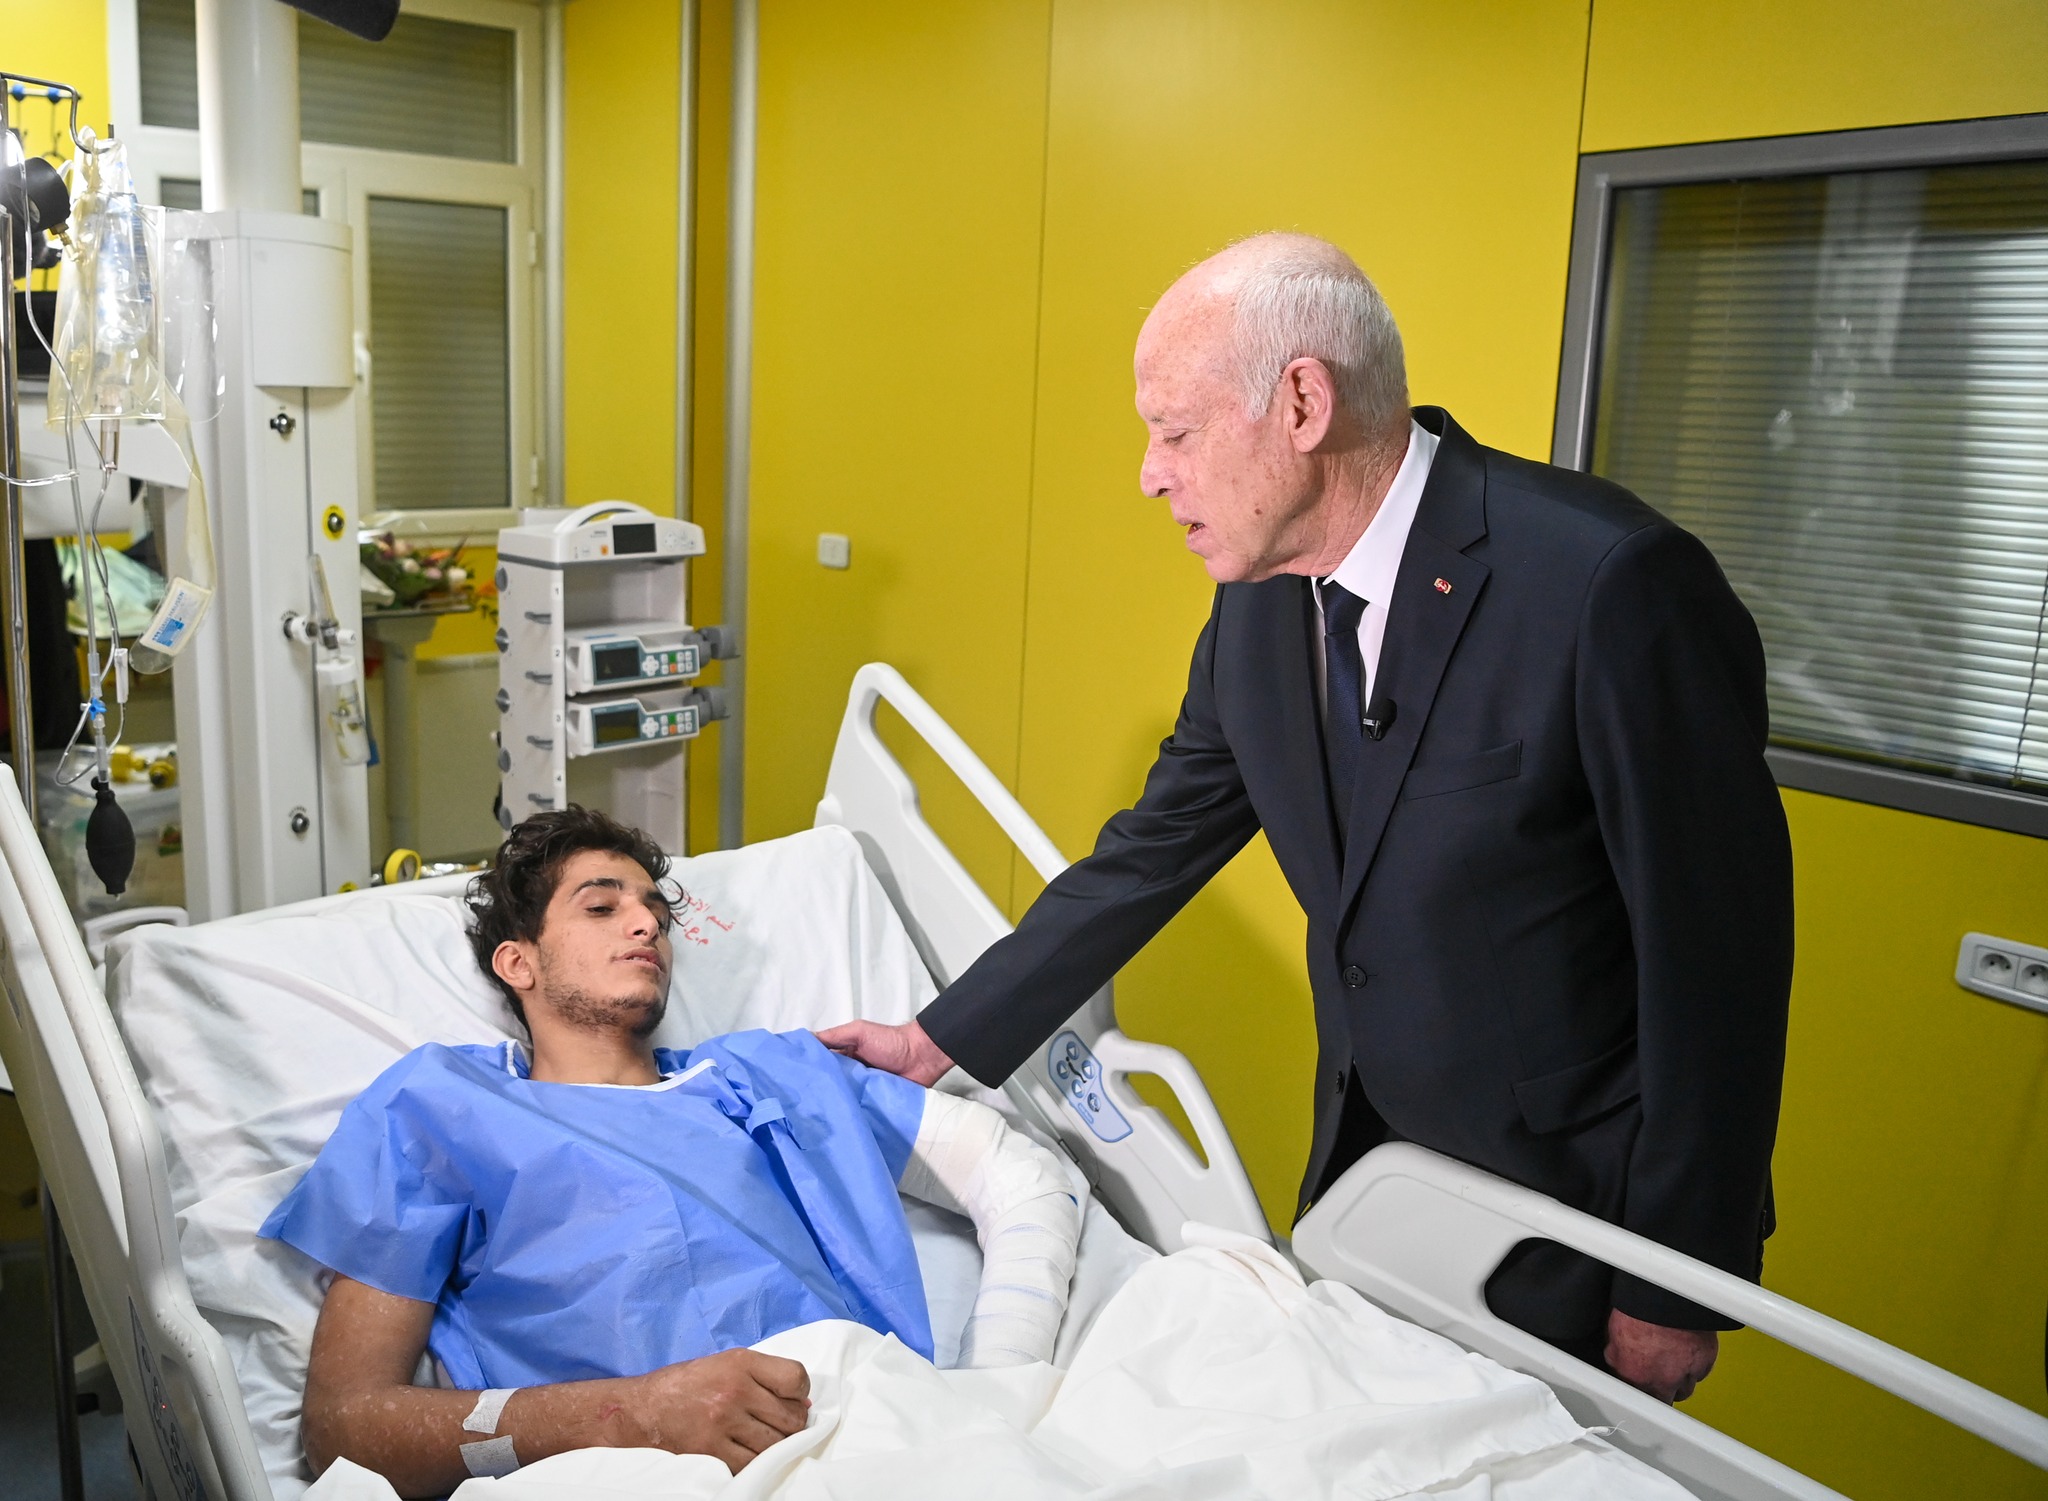 Le président de la République rend visite aux blessés palestiniens accueillis en Tunisie